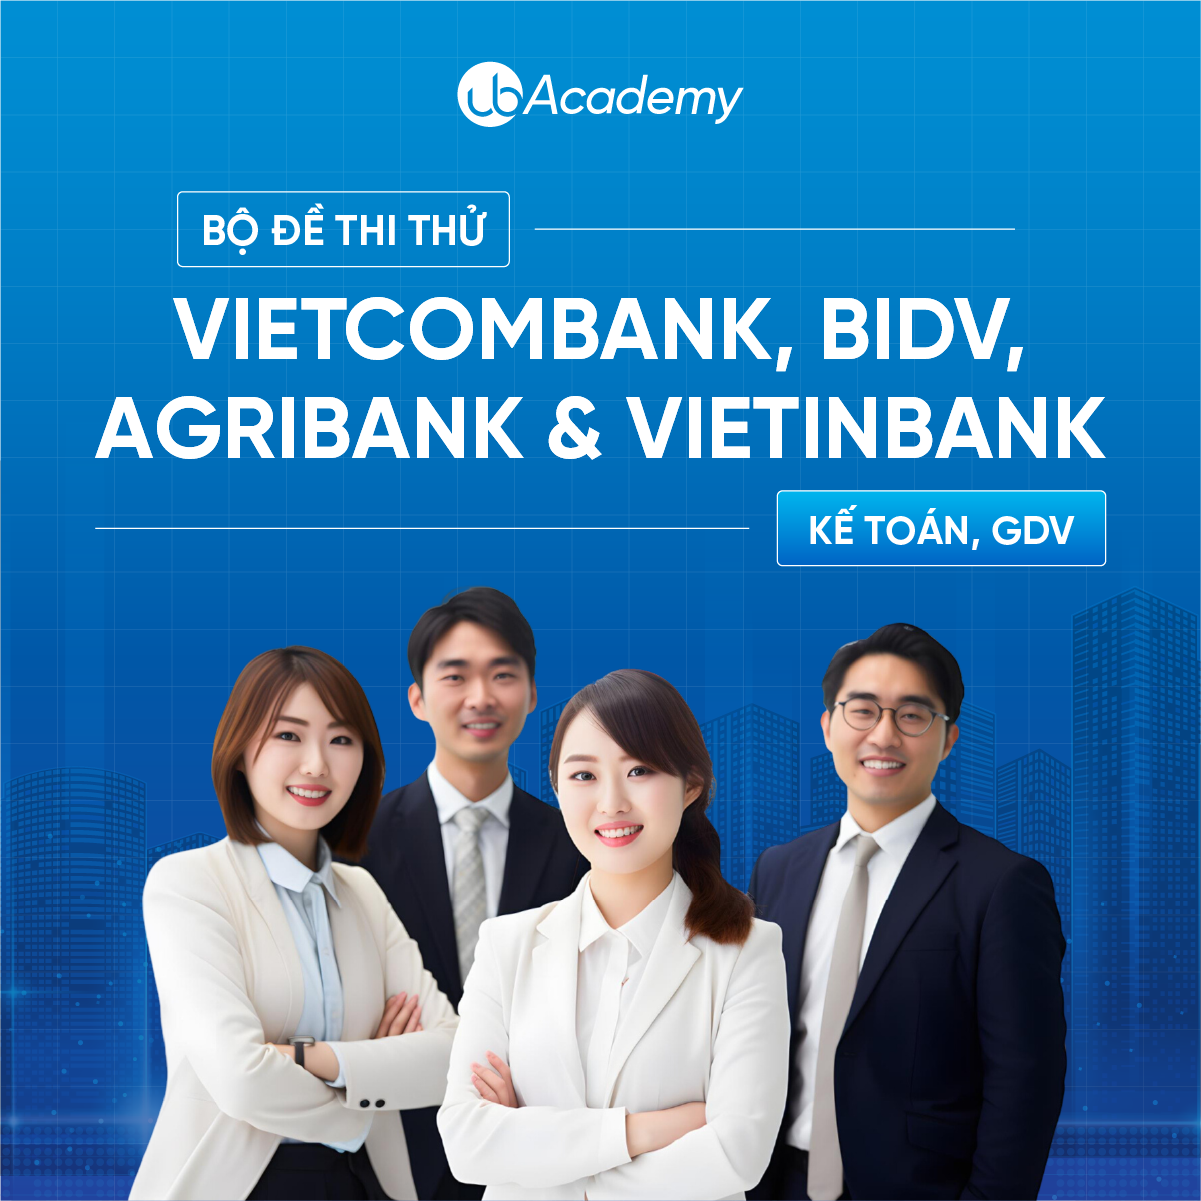 Bộ đề thi thử Vietcombank, BIDV, Agribank & VietinBank - Kế toán, GDV